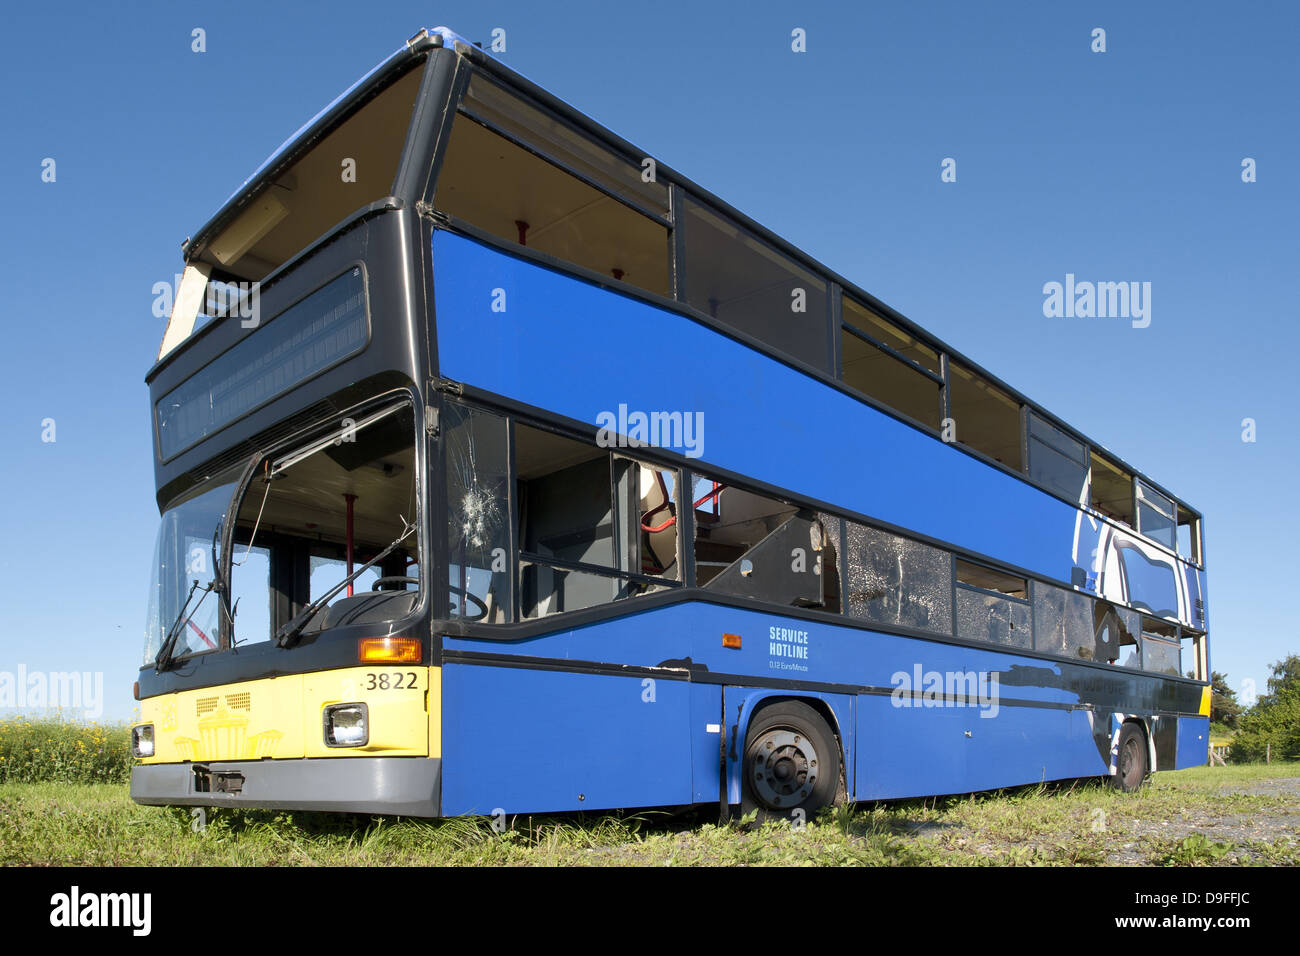 Beschaedigter Doppeldeccurbus auf einem Parkplatz |dañado autobús de dos pisos en un lote de estacionamiento| Foto de stock